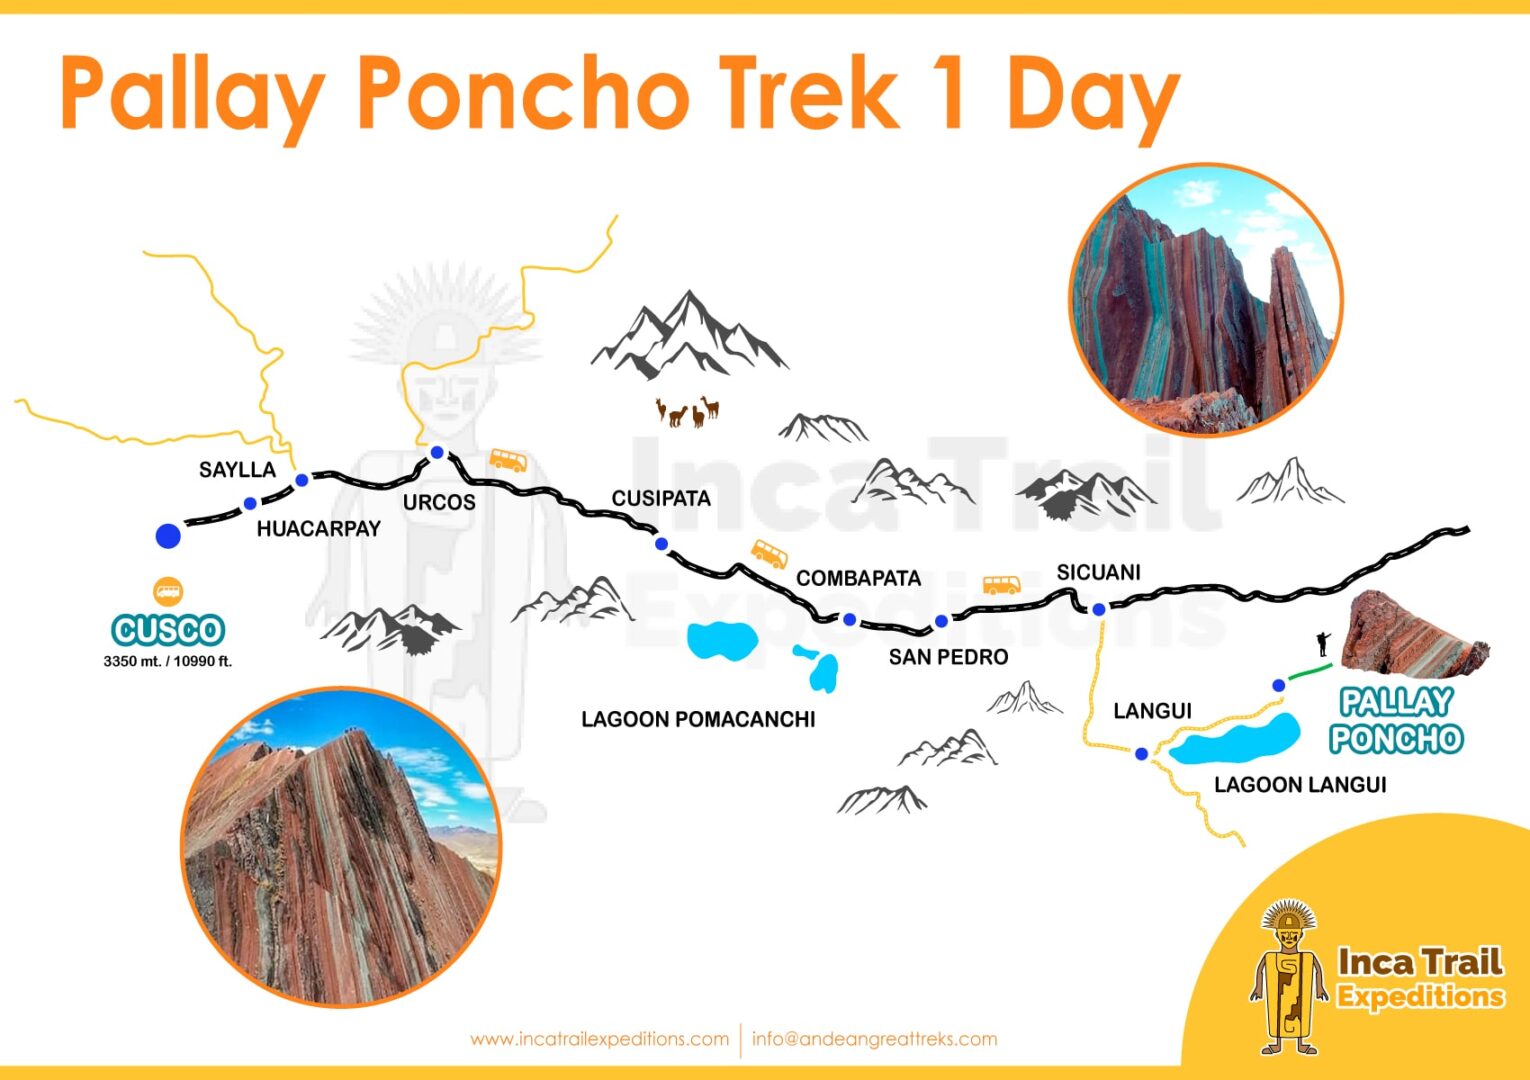 Trek to Pallay Poncho Mountain 1 Day